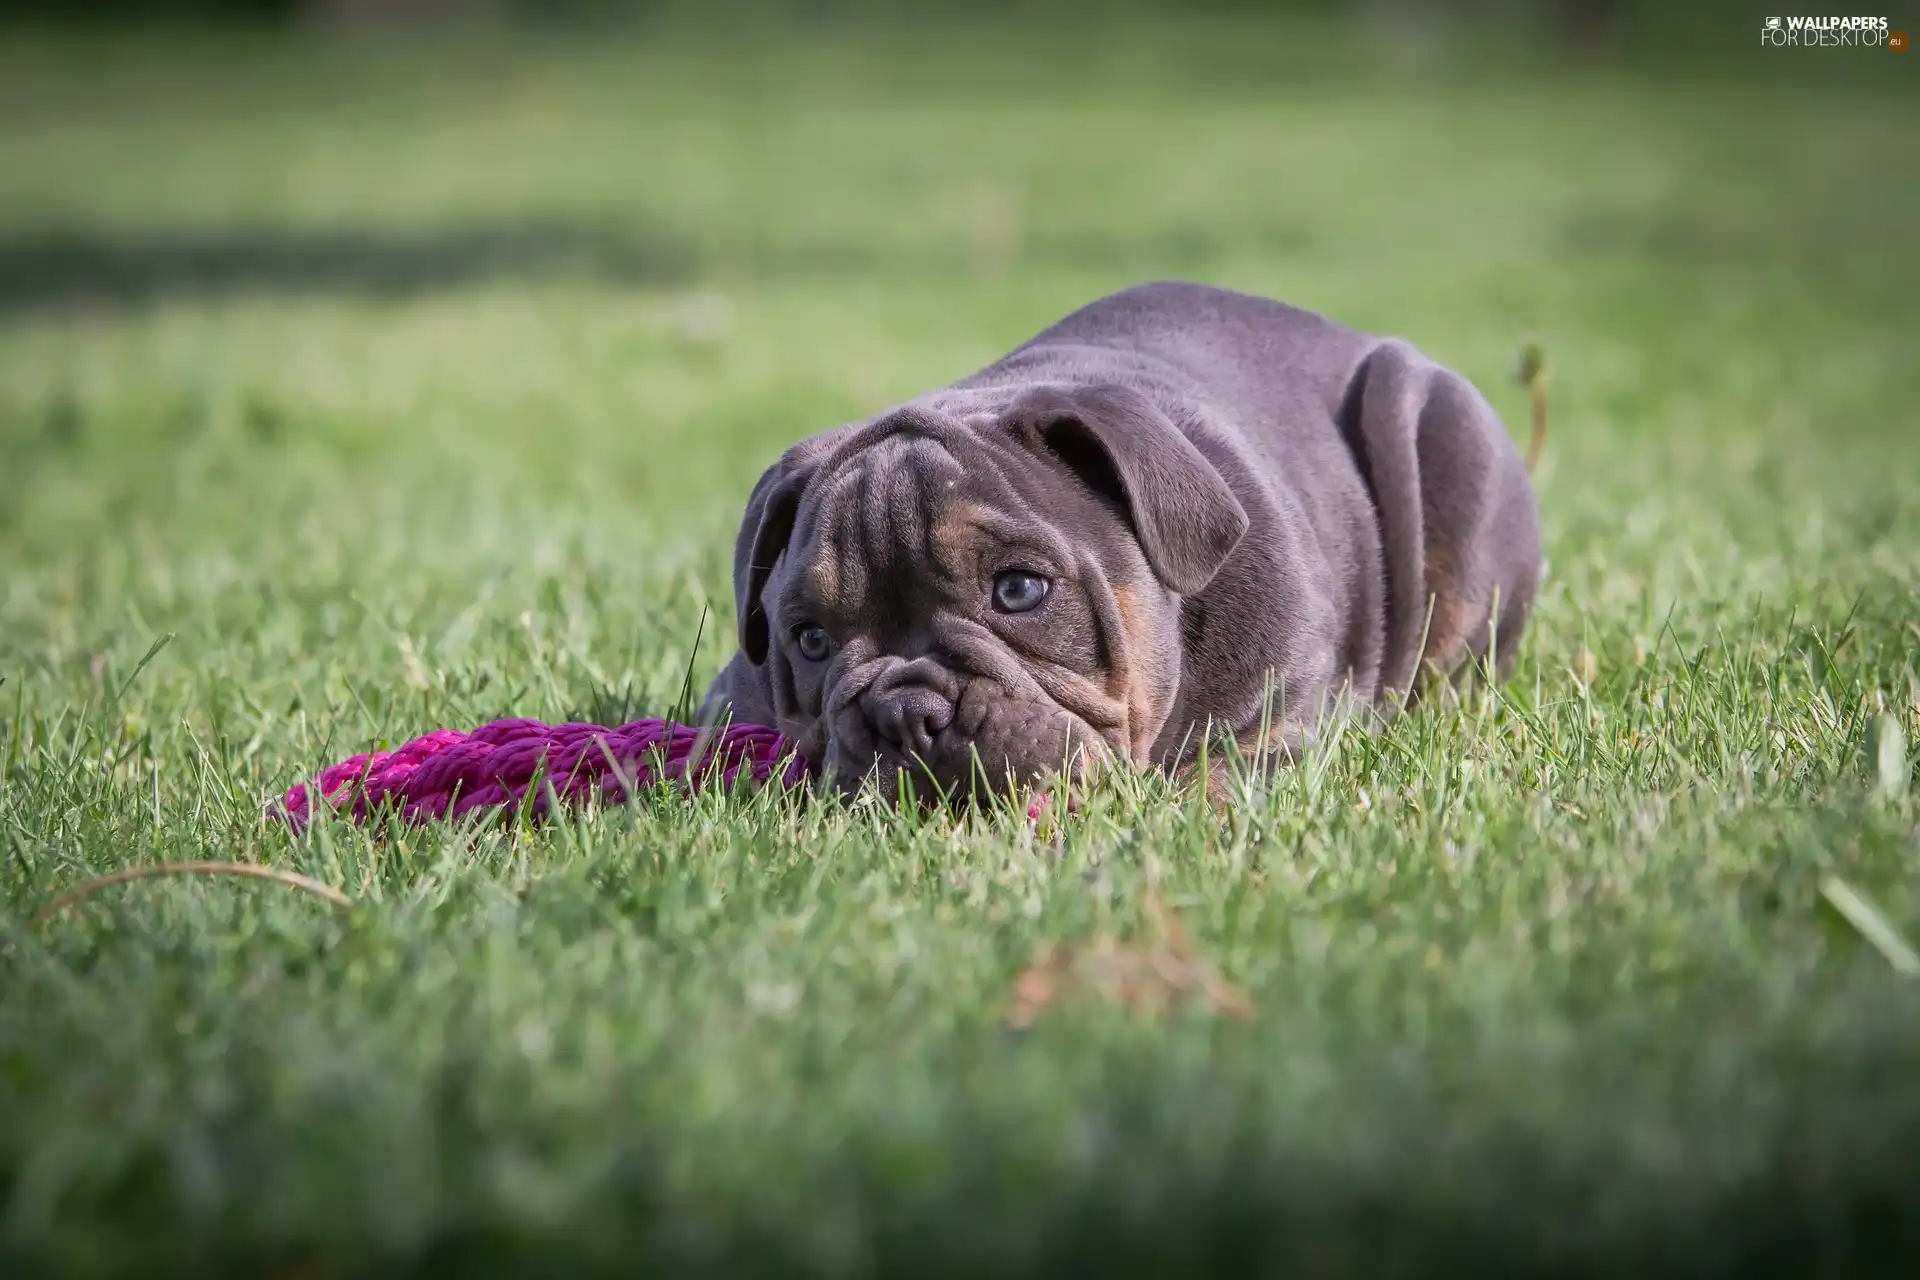 English Bulldog, grass, dog, Puppy, lying